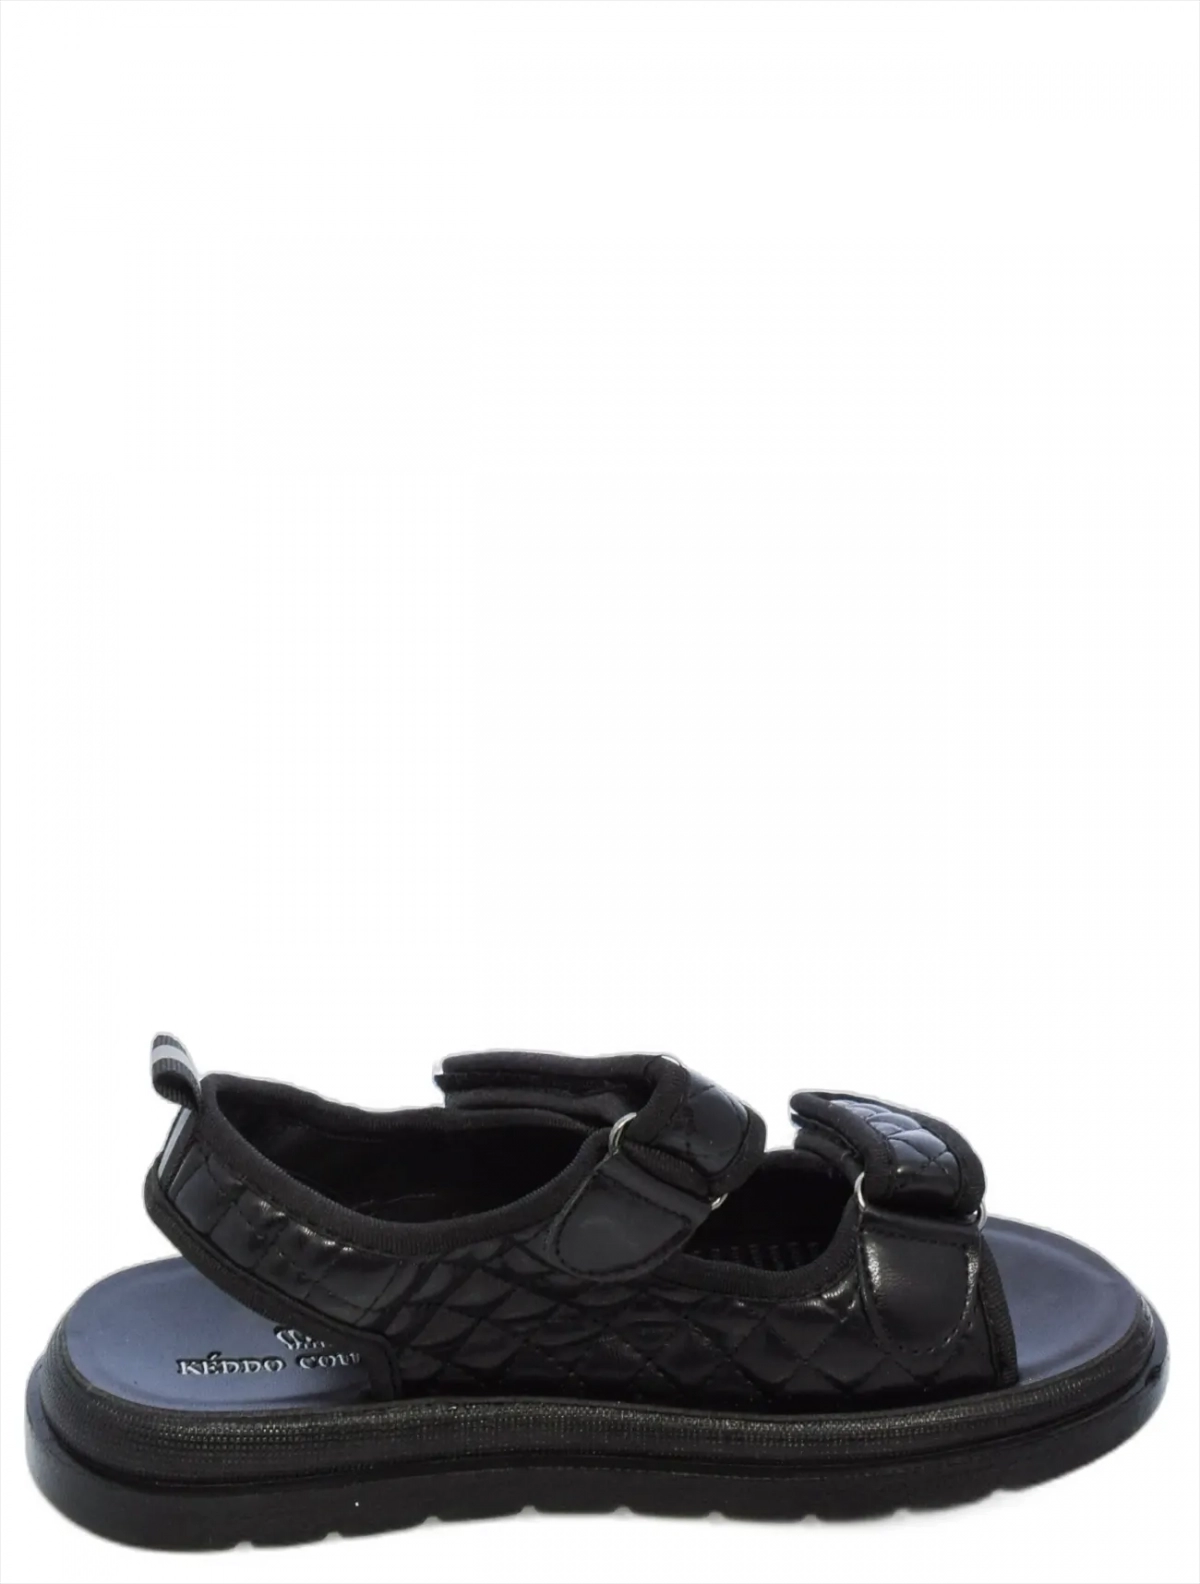 KEDDO 537730/08-01 детские сандали